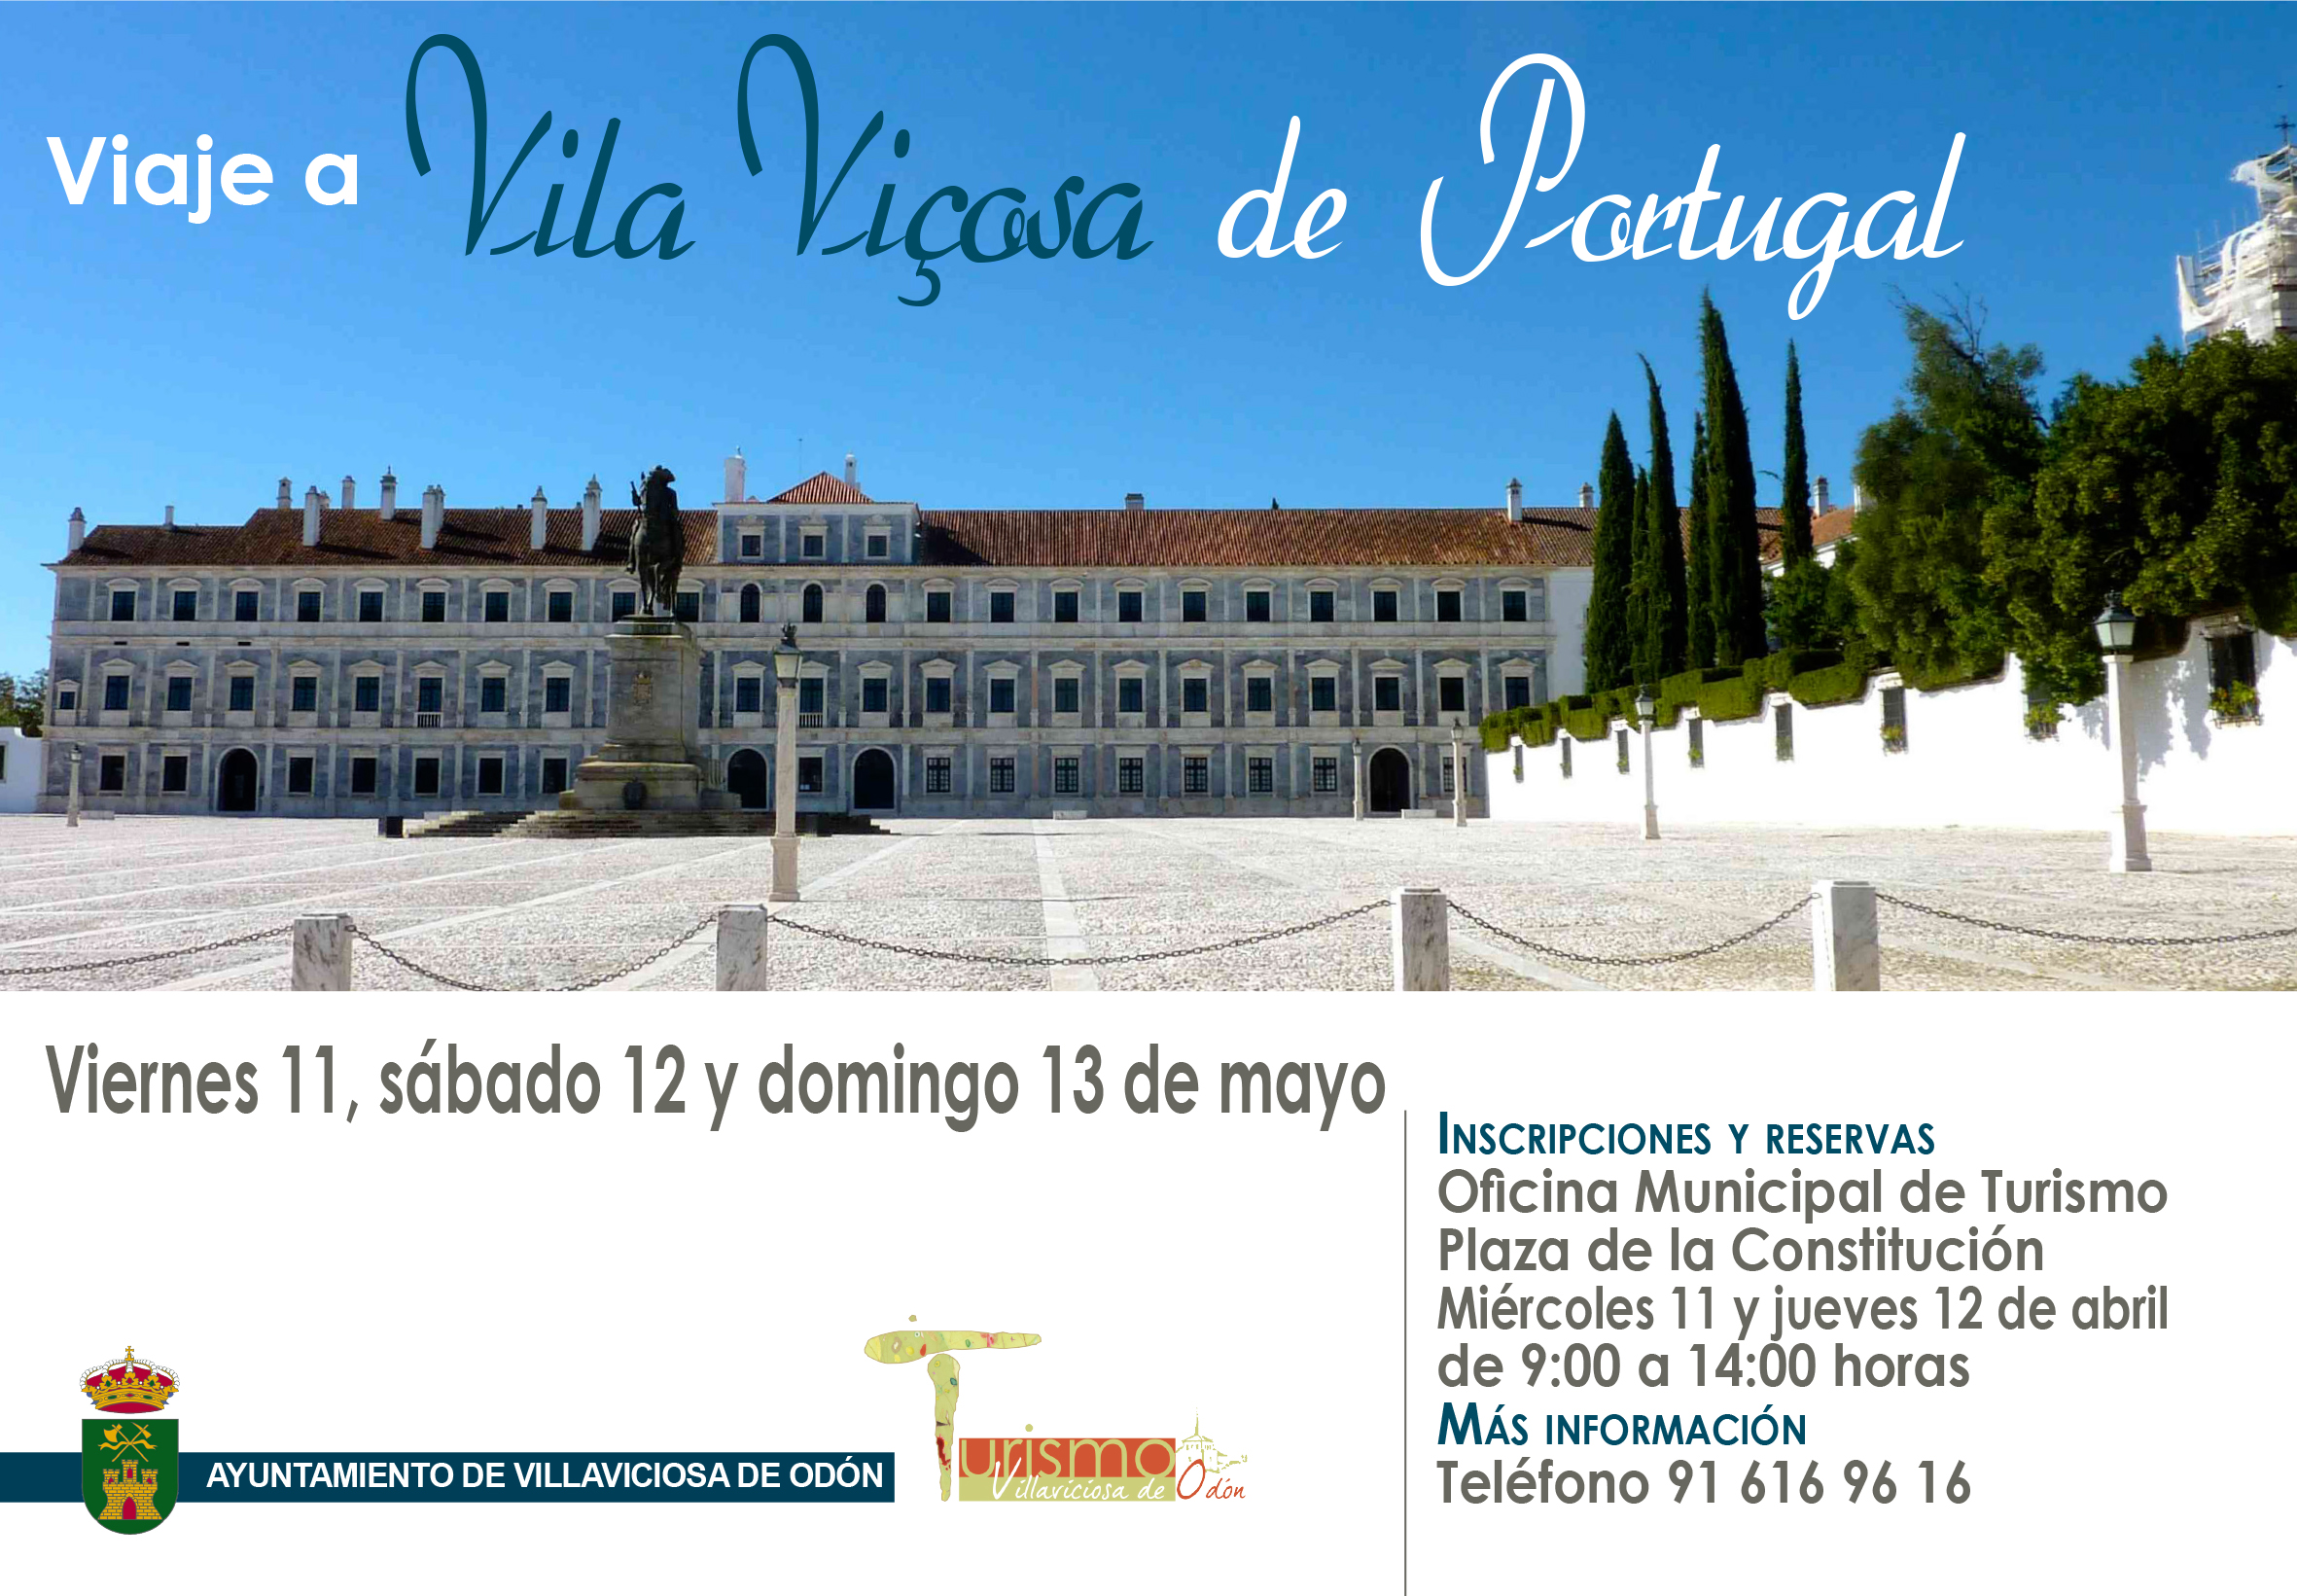 Inscripciones Viaje a Vila Viçosa de Portugal